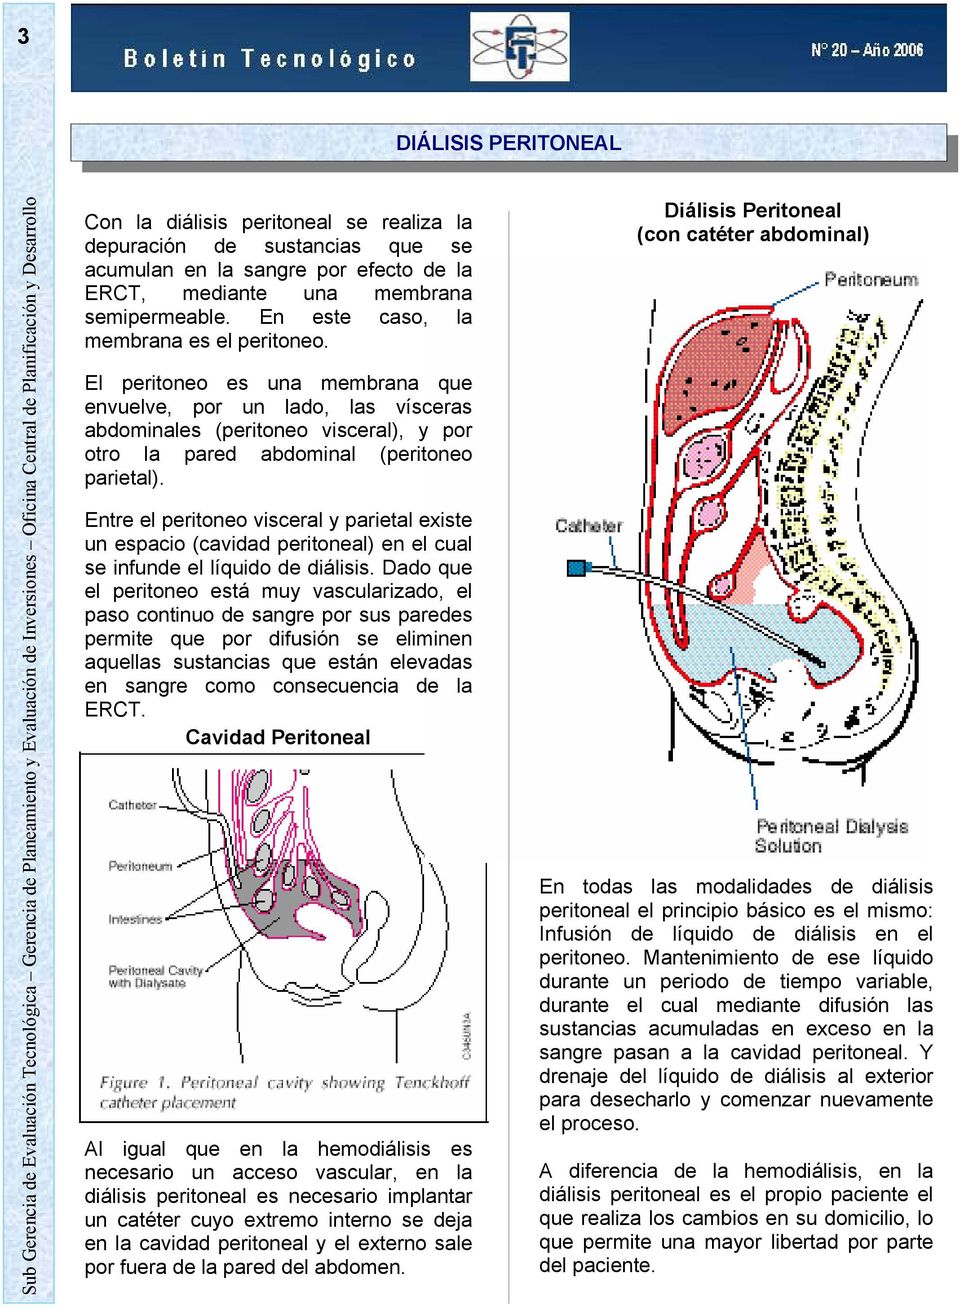 Entre el peritoneo visceral y parietal existe un espacio (cavidad peritoneal) en el cual se infunde el líquido de diálisis.